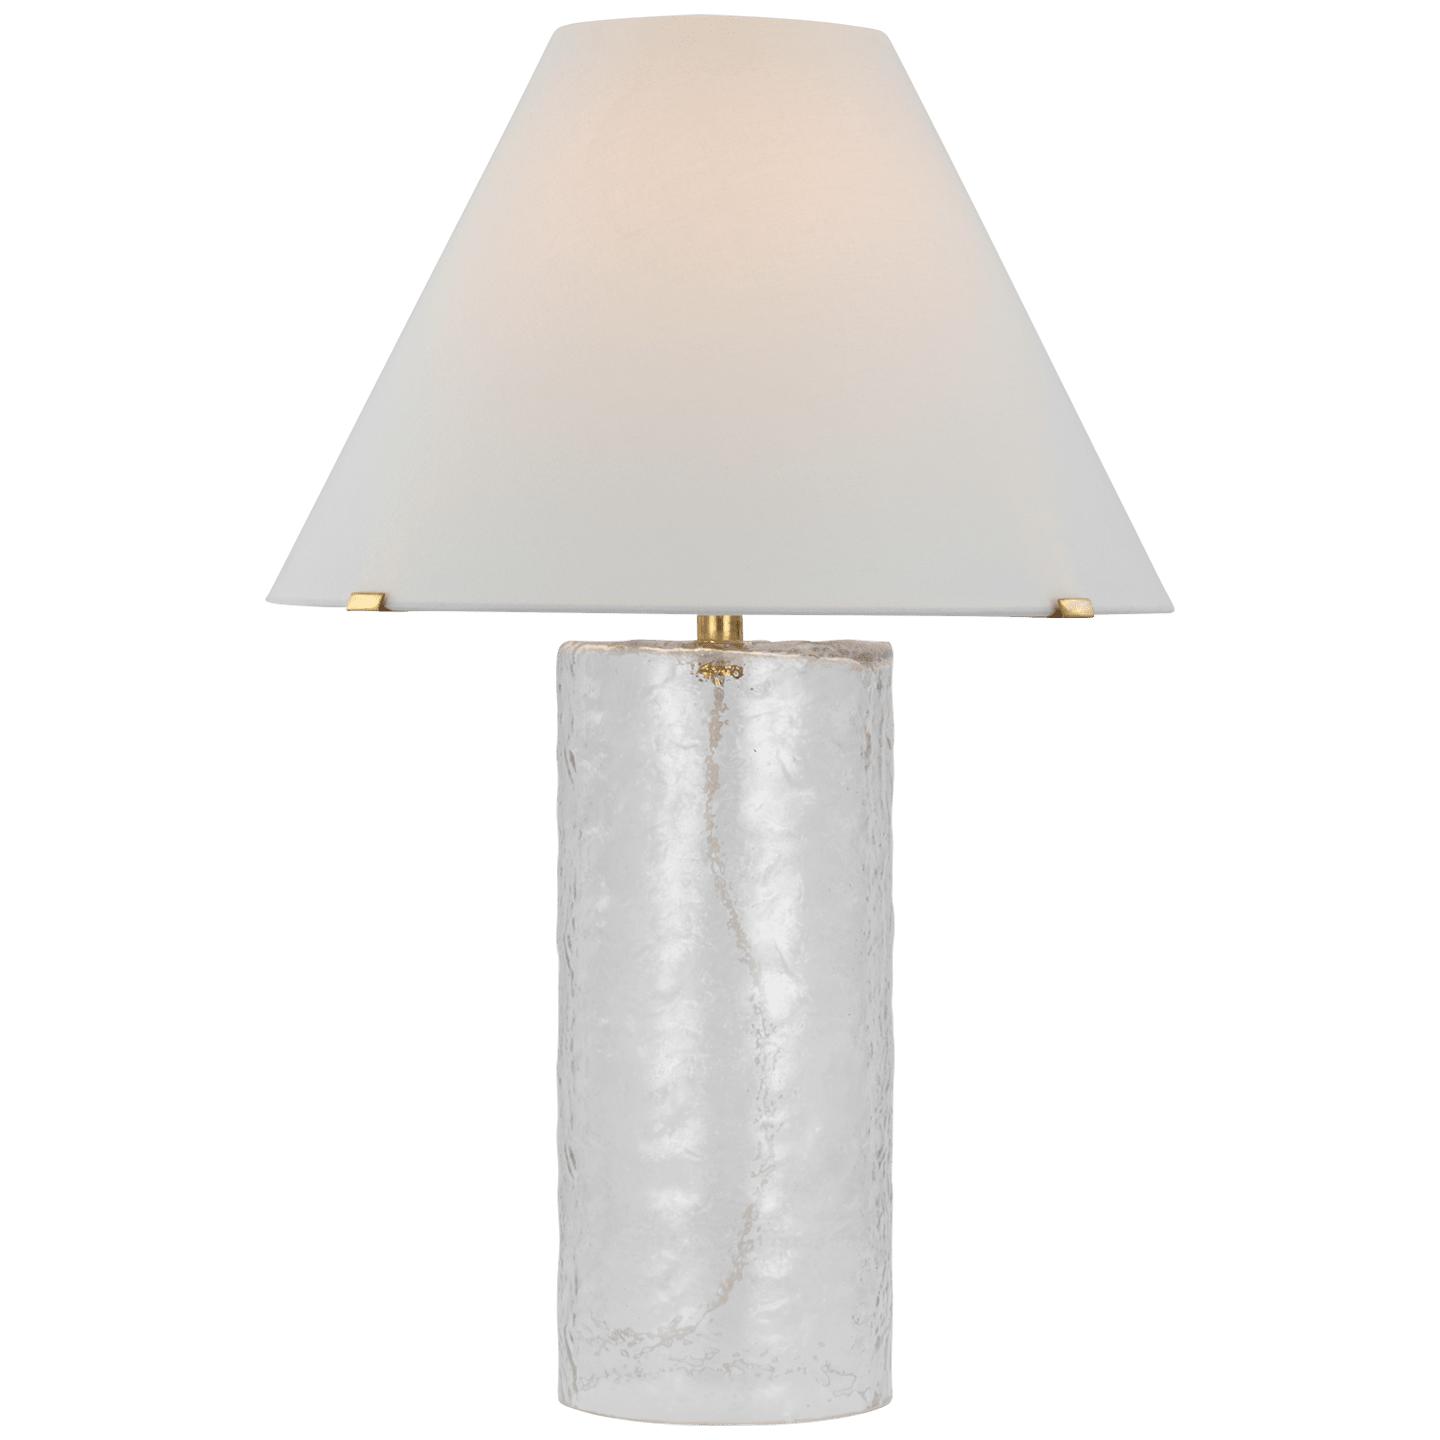 Купить Настольная лампа Driscoll Large Table Lamp в интернет-магазине roooms.ru